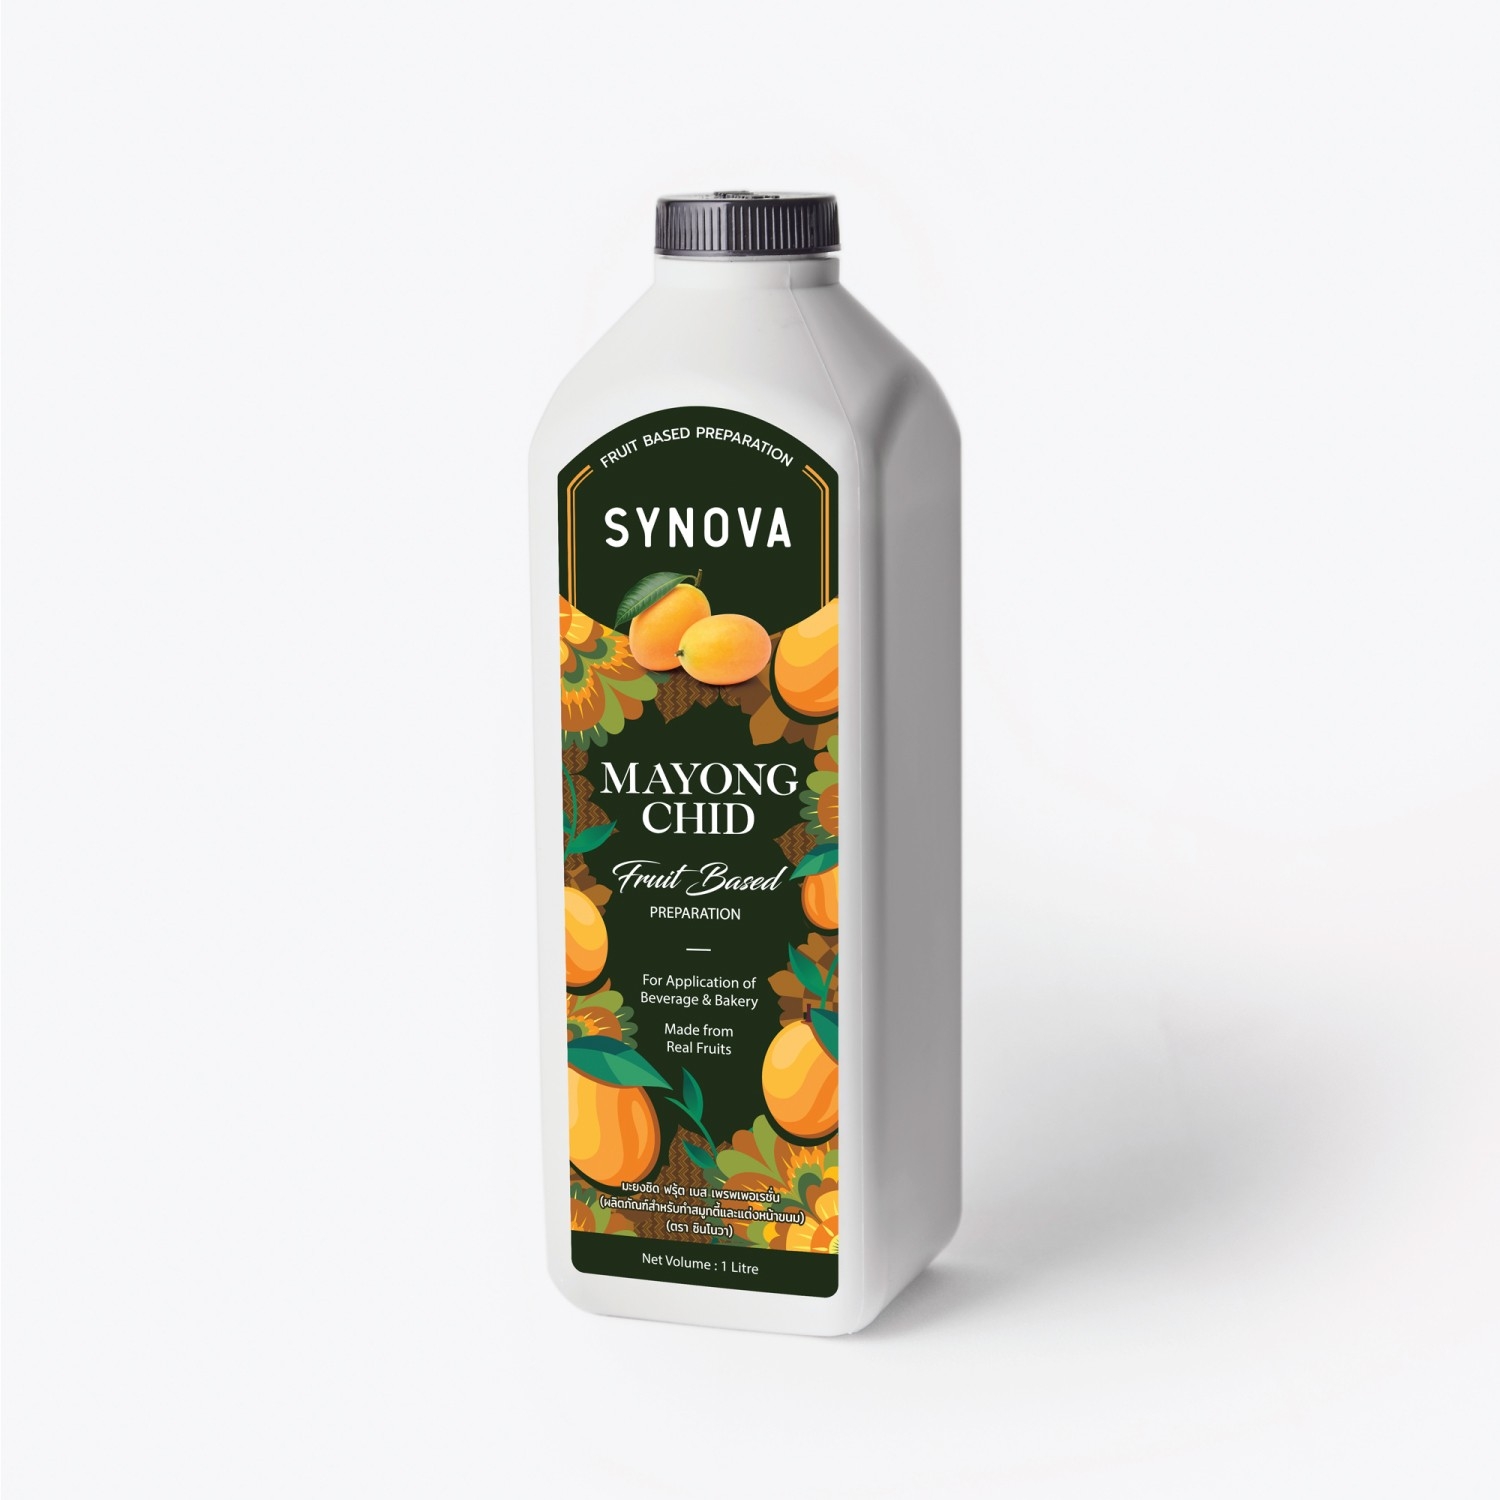 น้ำผลไม้เข้มข้น : SYNOVA ซอสมะยงชิดเข้มข้น (ขวด)